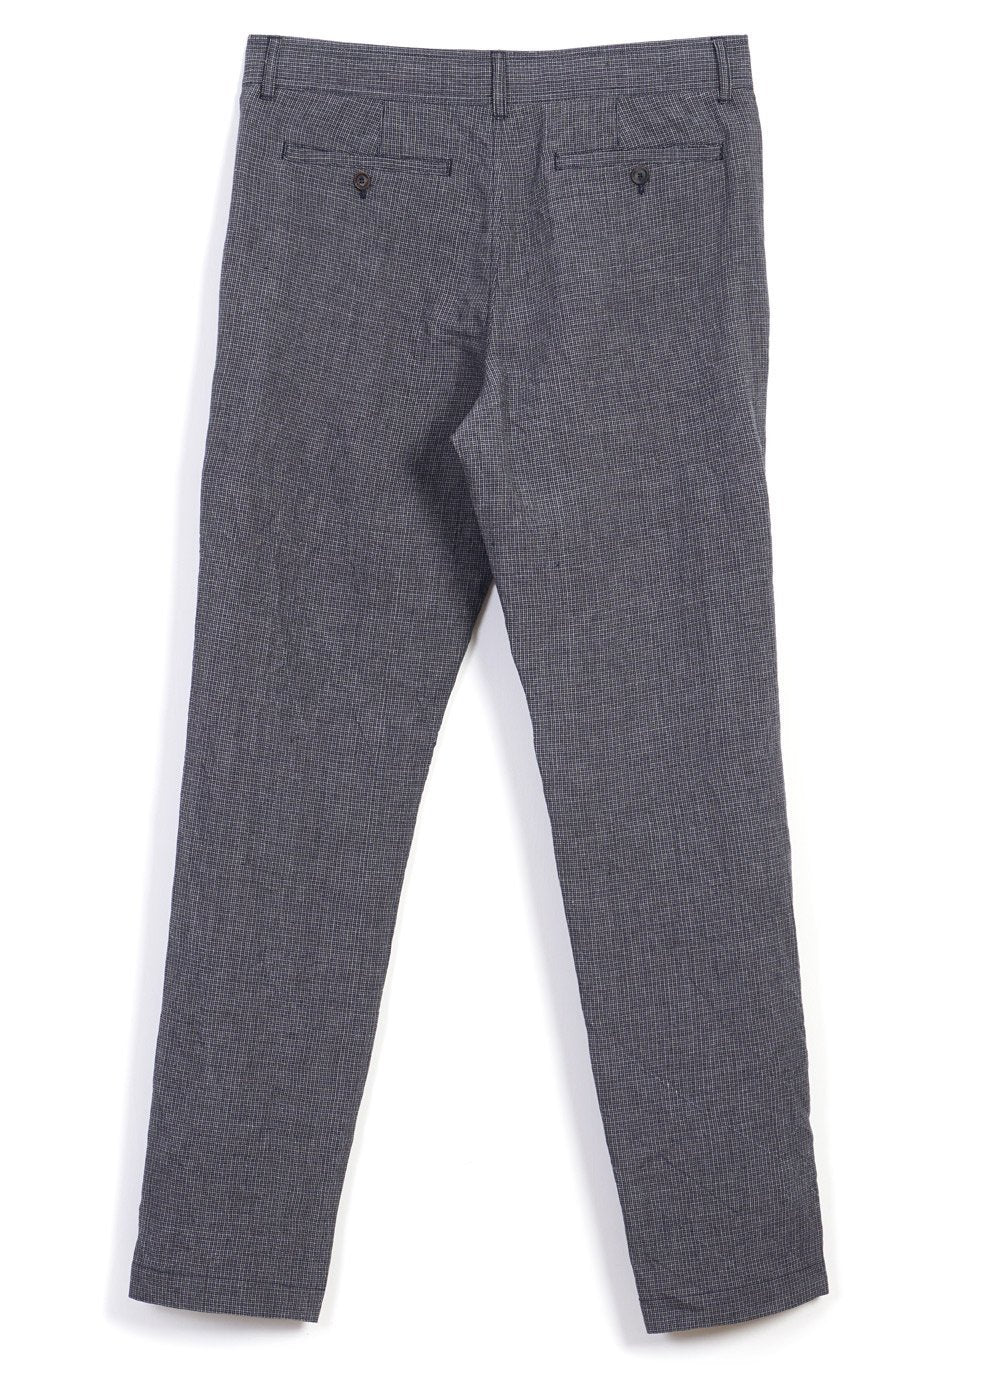 HANSEN GARMENTS - FRED | Regular Fit Trousers | River - HANSEN Garments